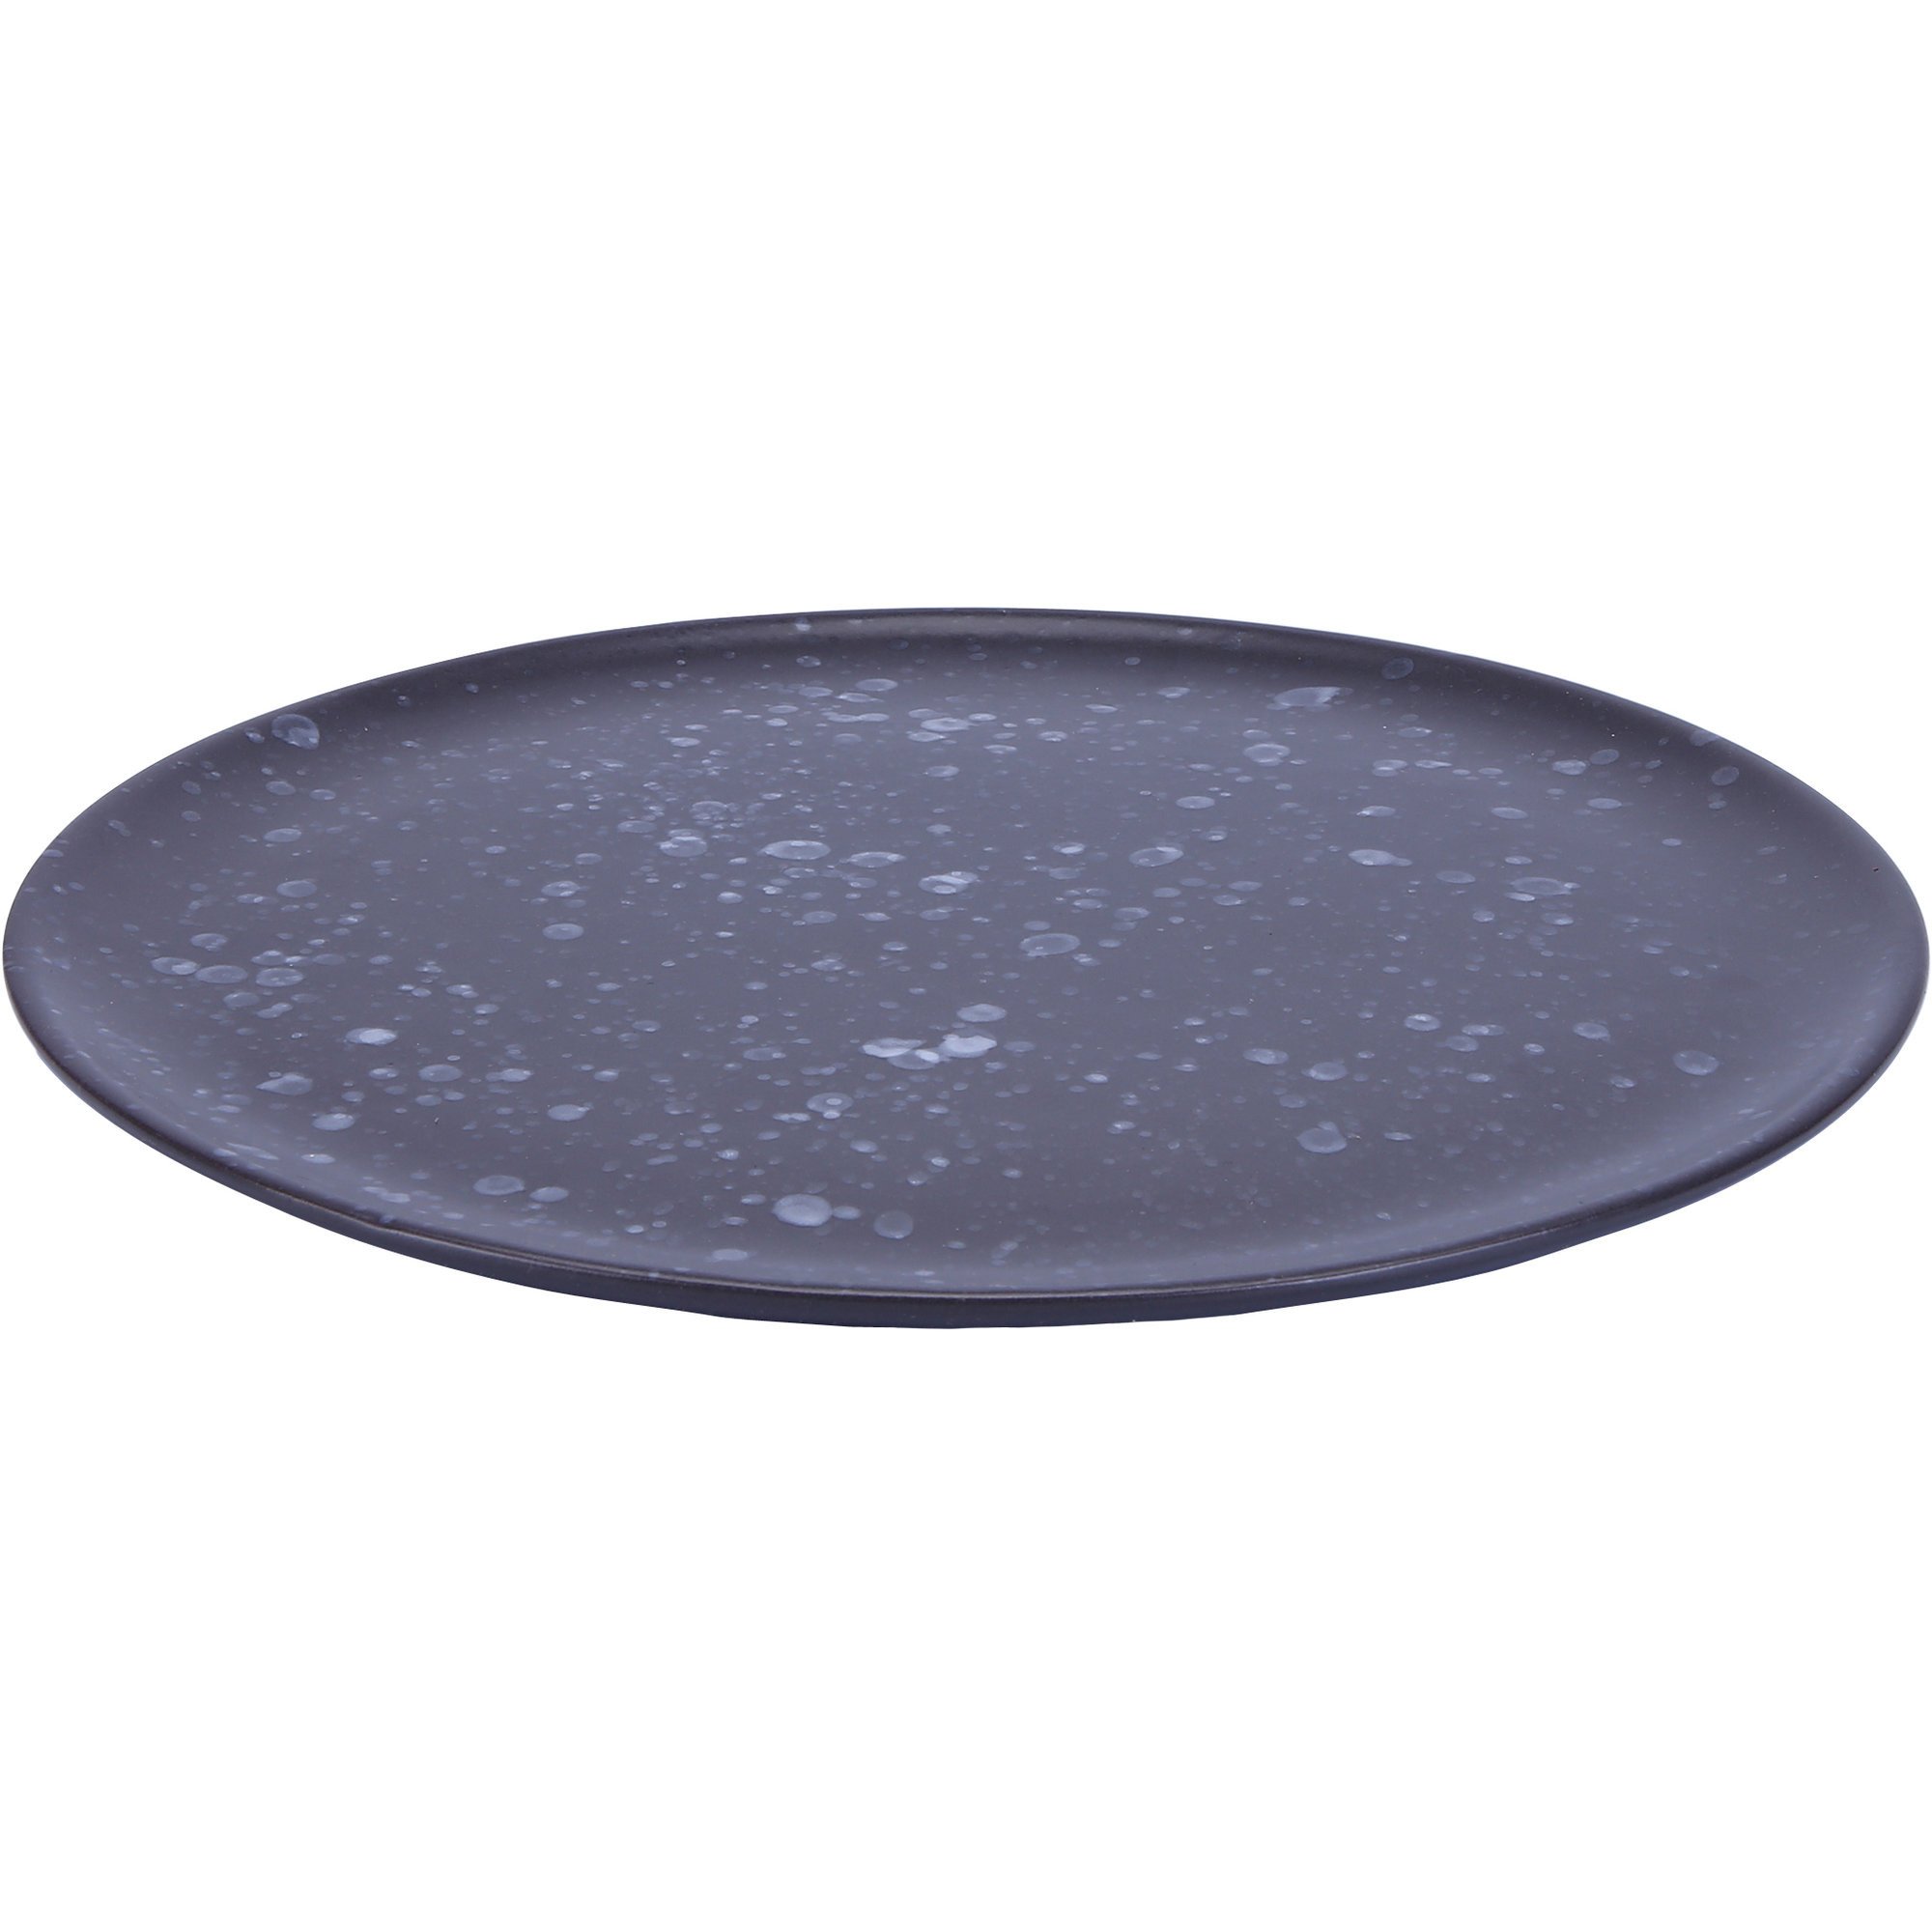 Aida RAW frokosttallerken i mørkegrå, Ø 22,5 cm.